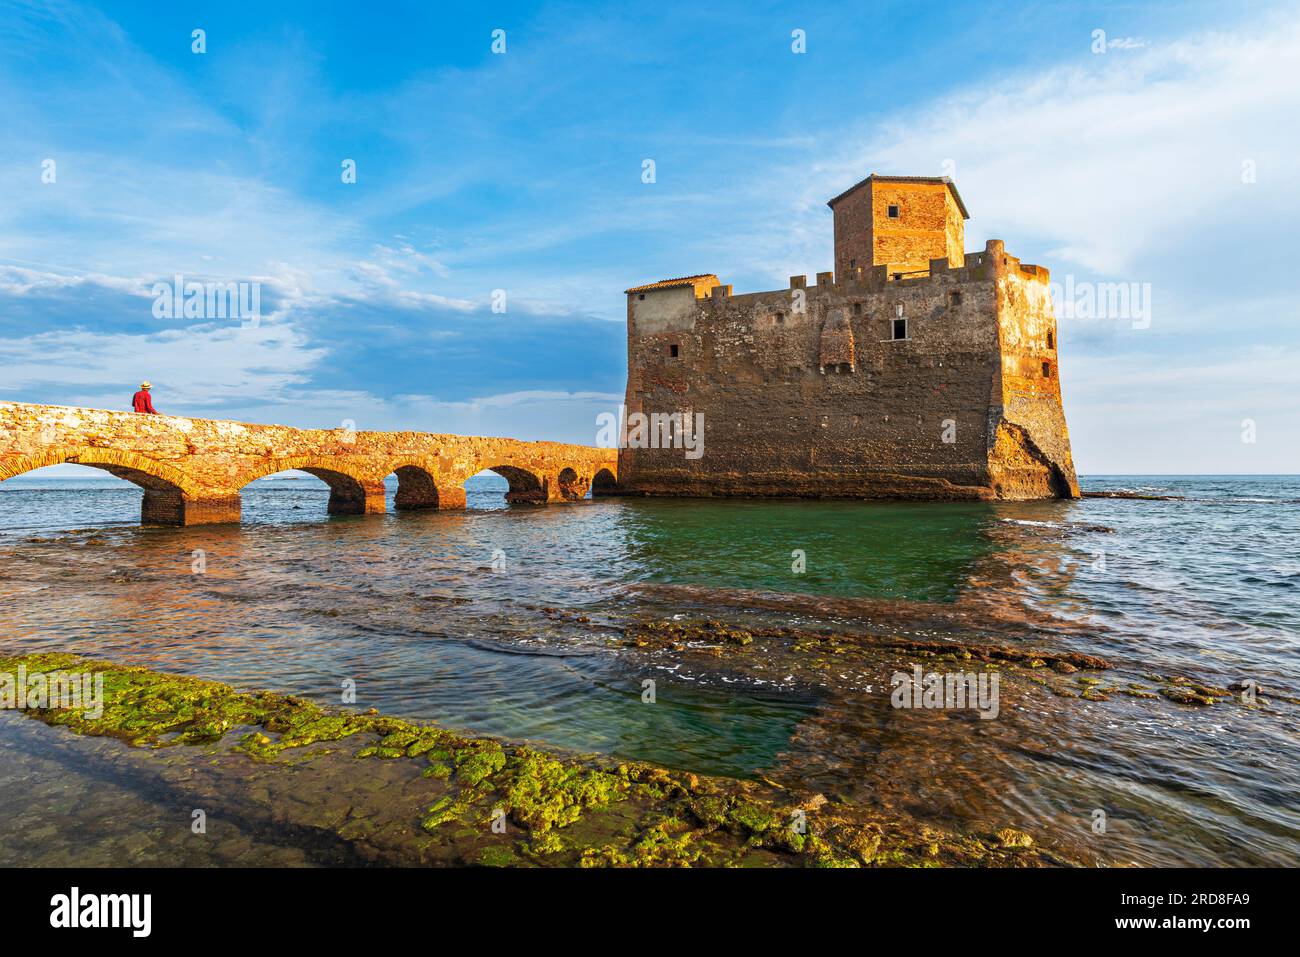 L'uomo sul ponte cammina fino al castello fortificato di Torre Astura, sulle acque del Mar Tirreno, costruito sulle rovine di una villa romana, ora del tramonto Foto Stock